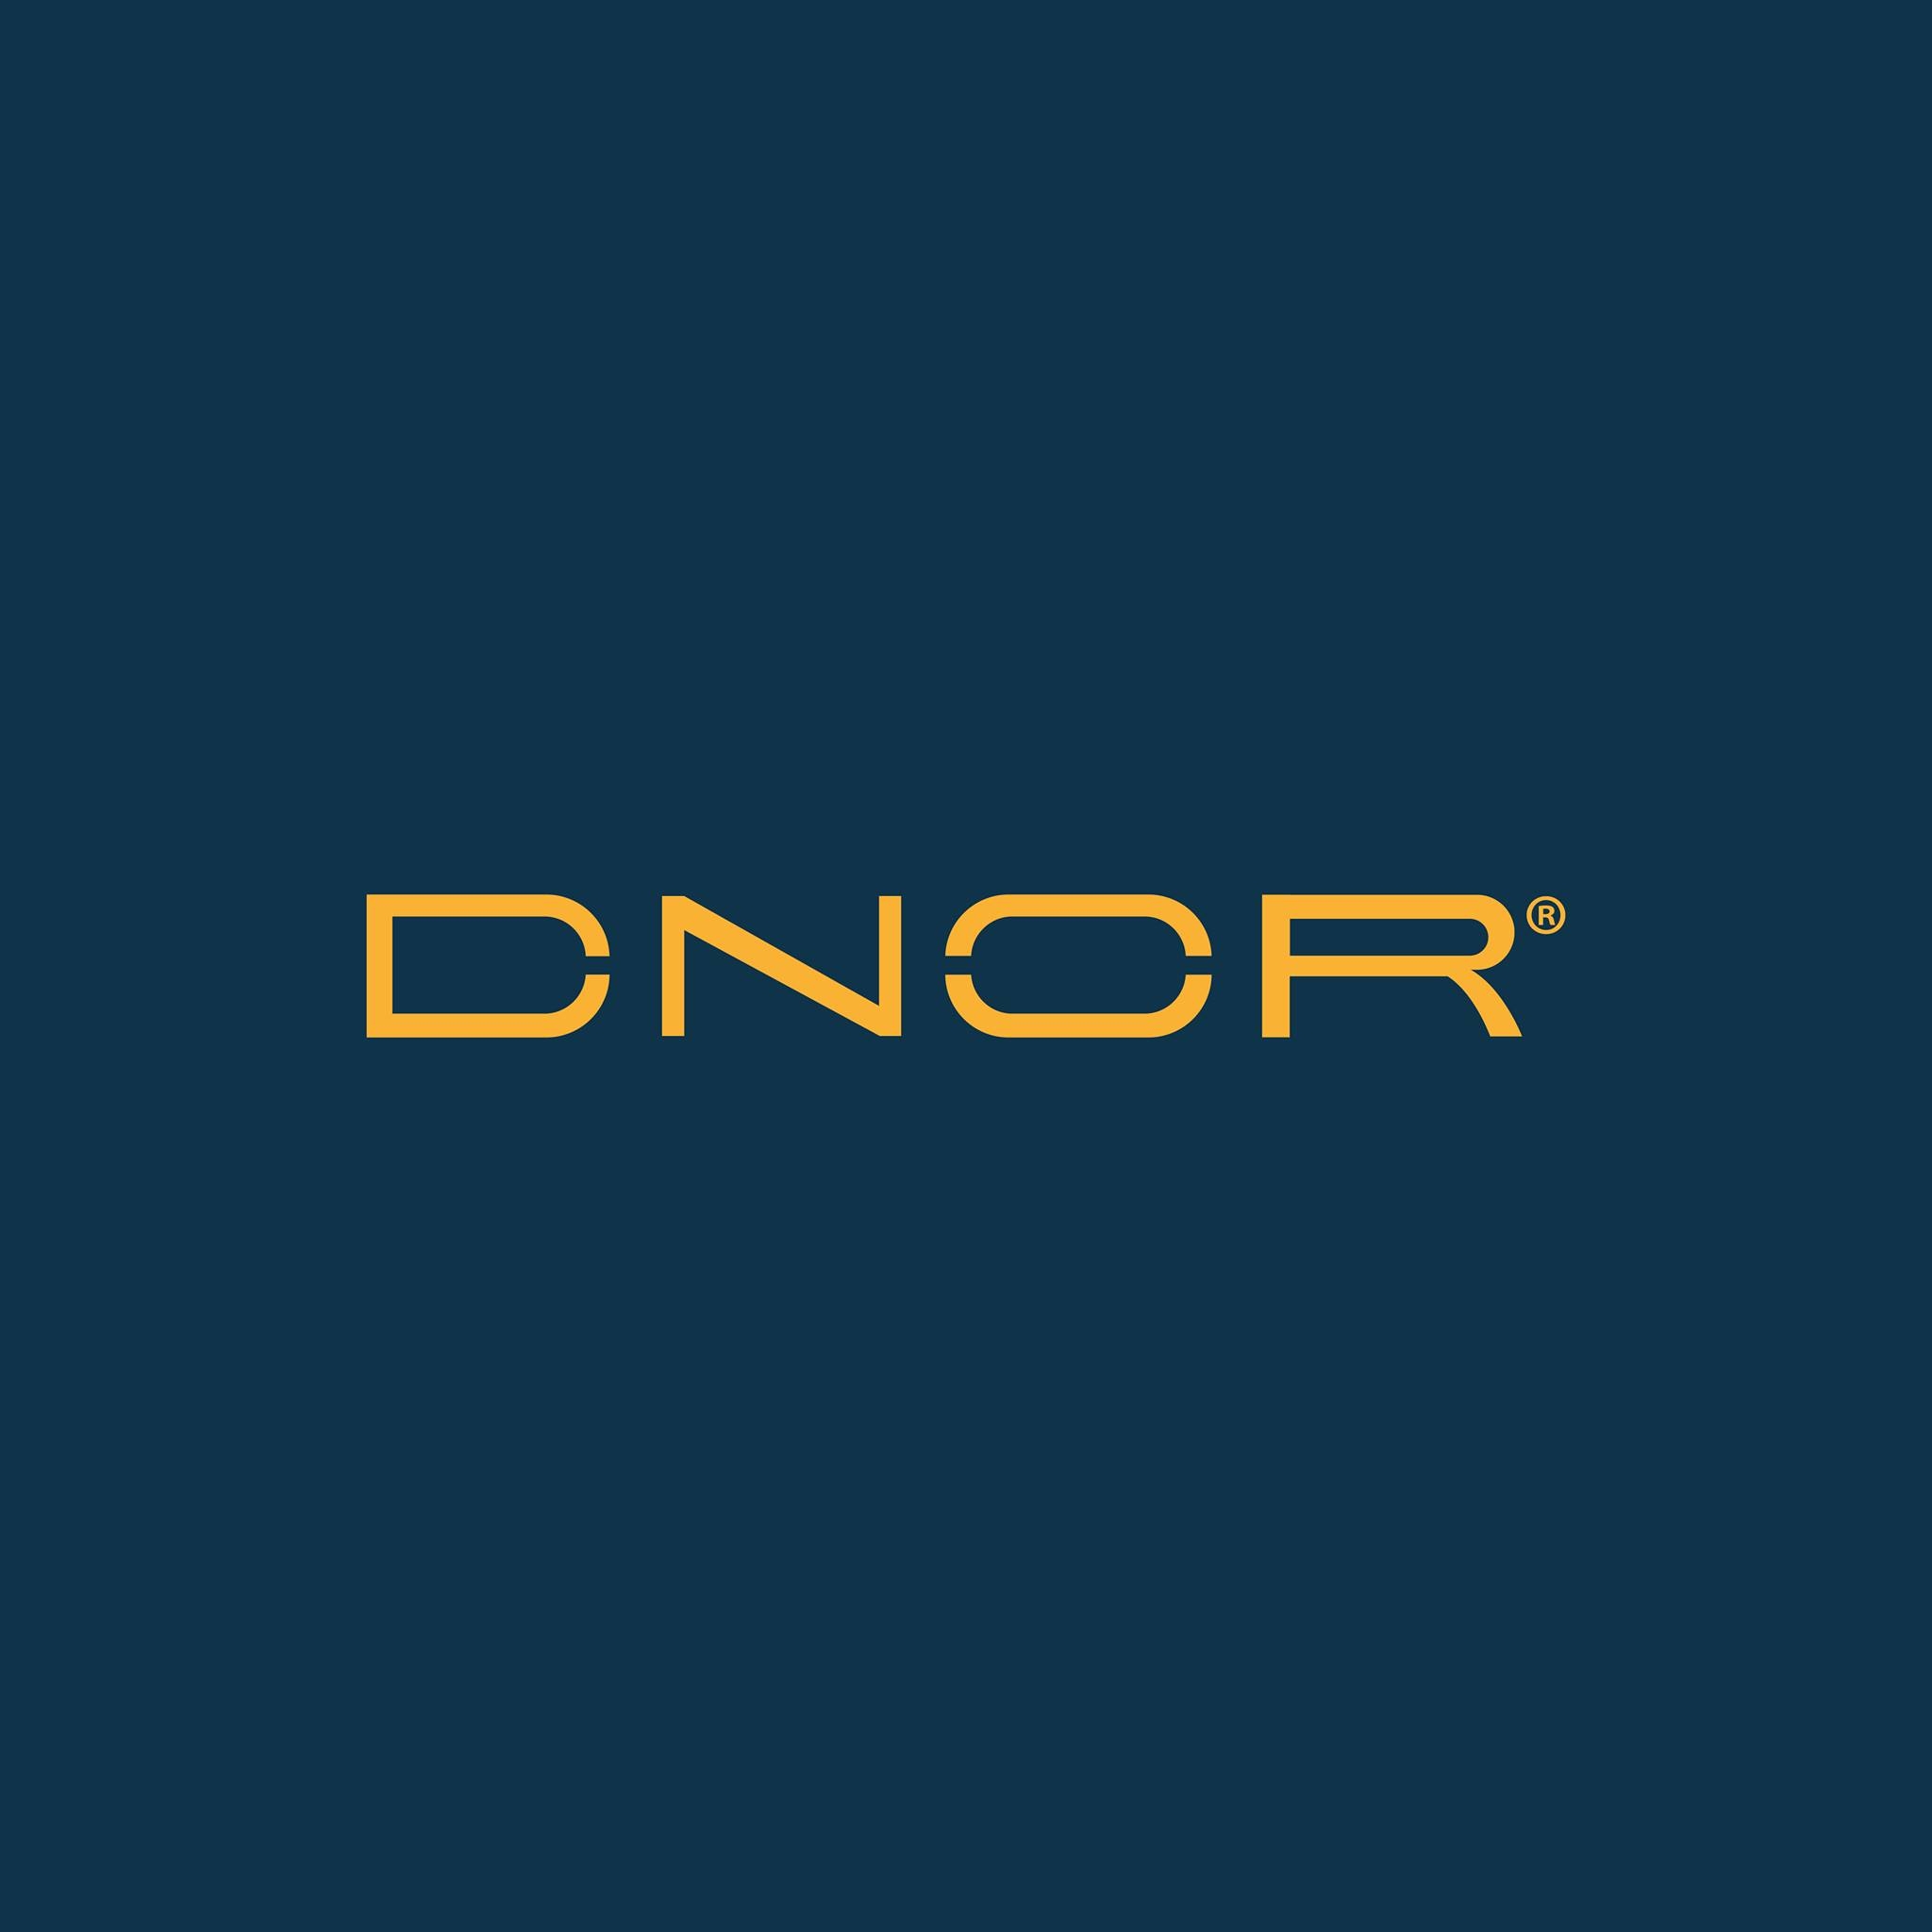 DNOR logo